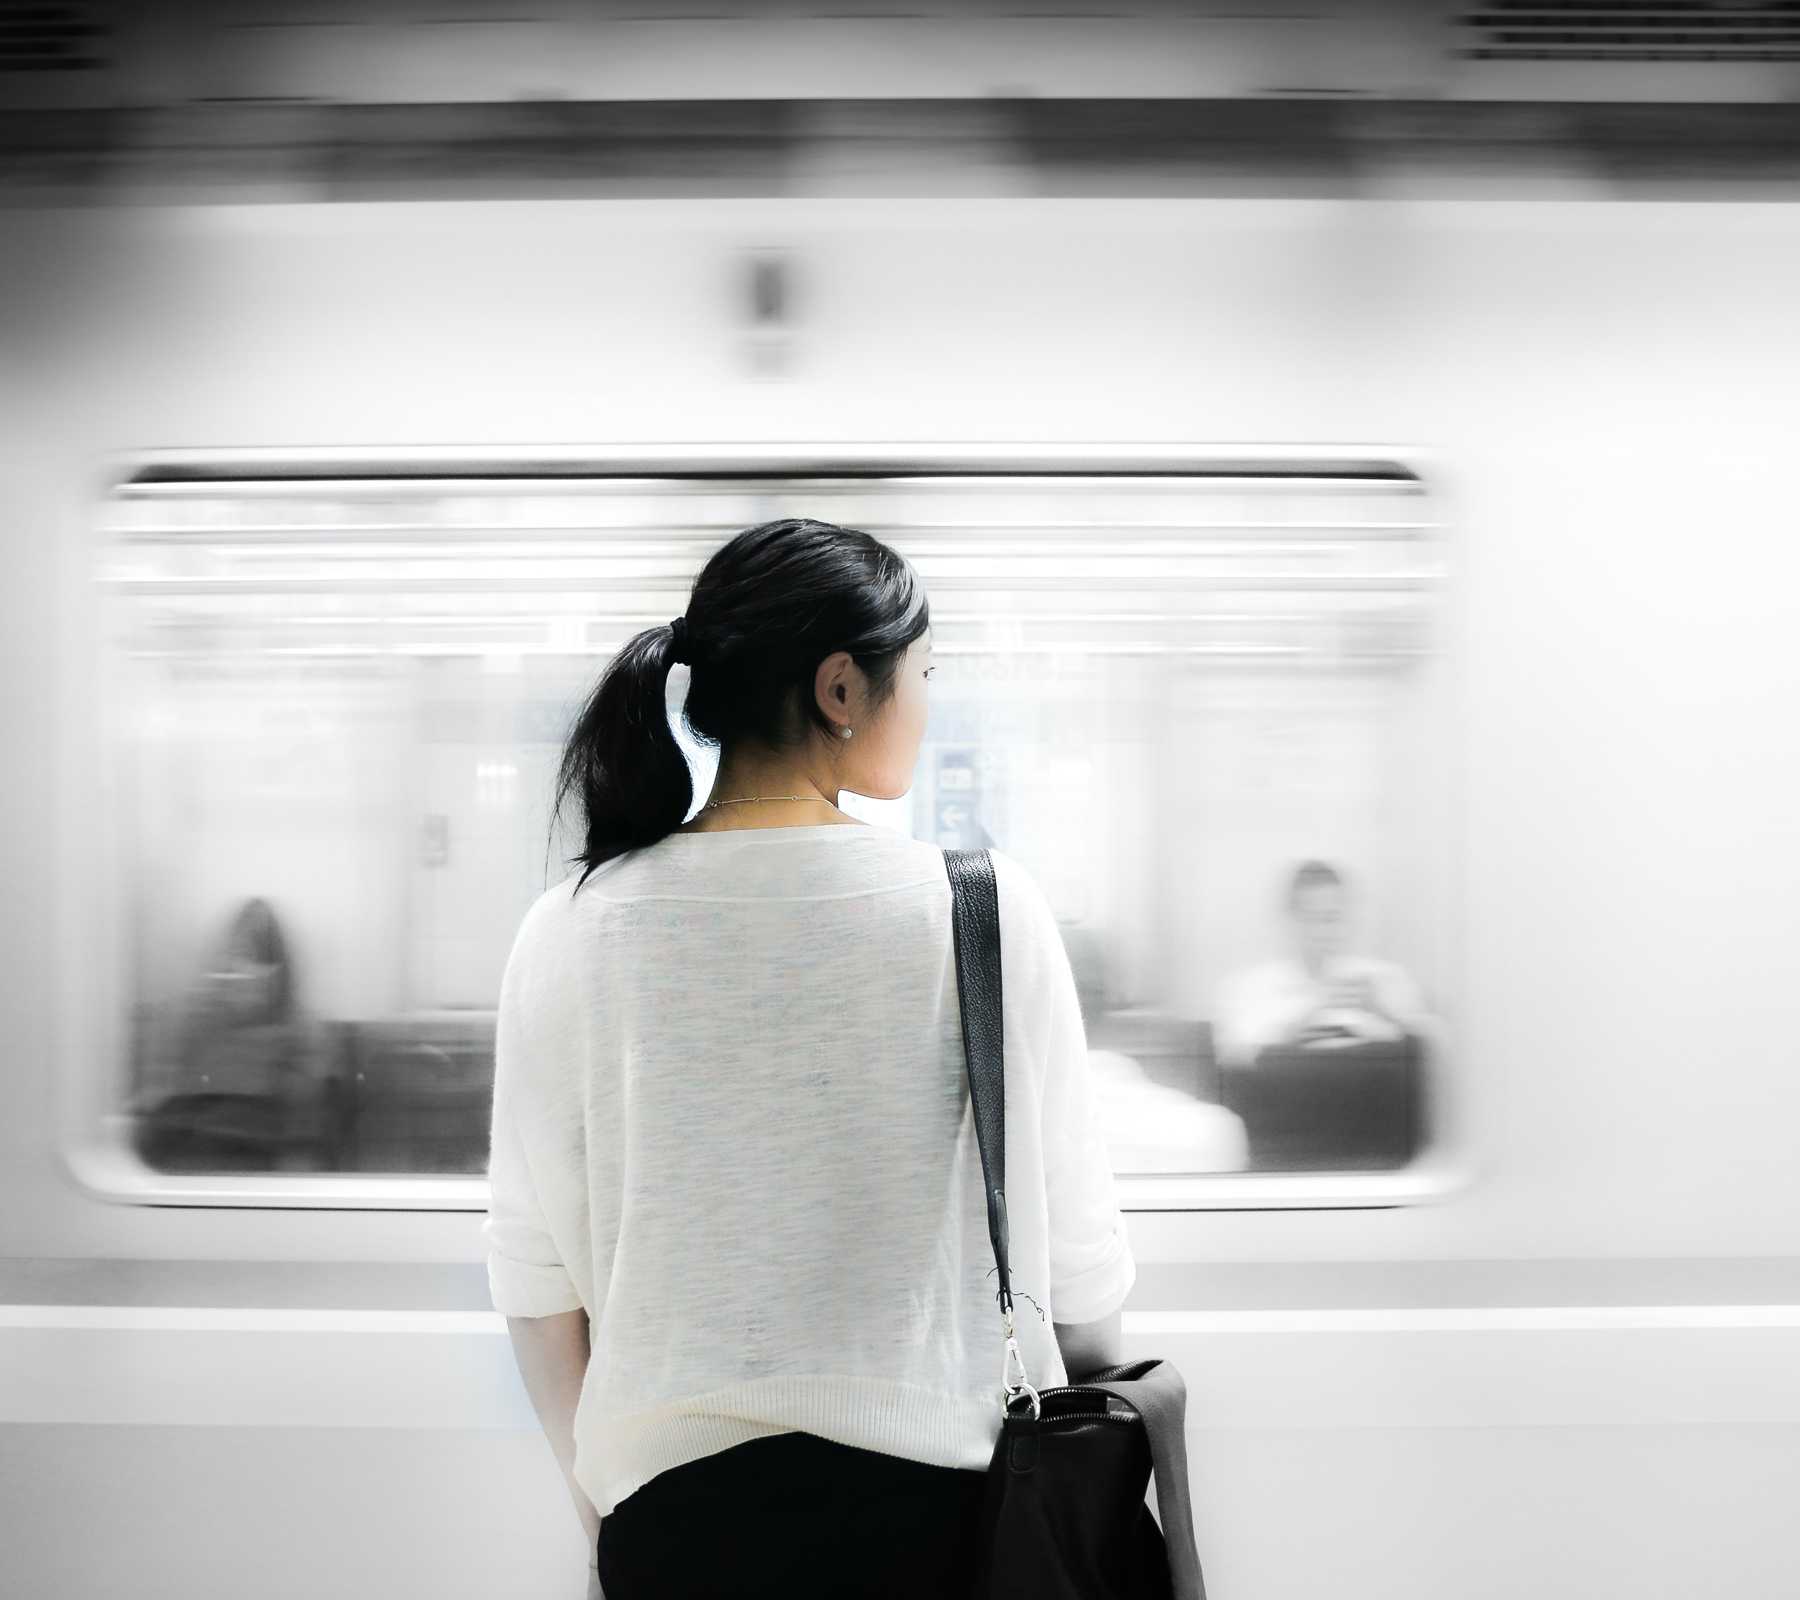 Train passing an Asian women on platform.